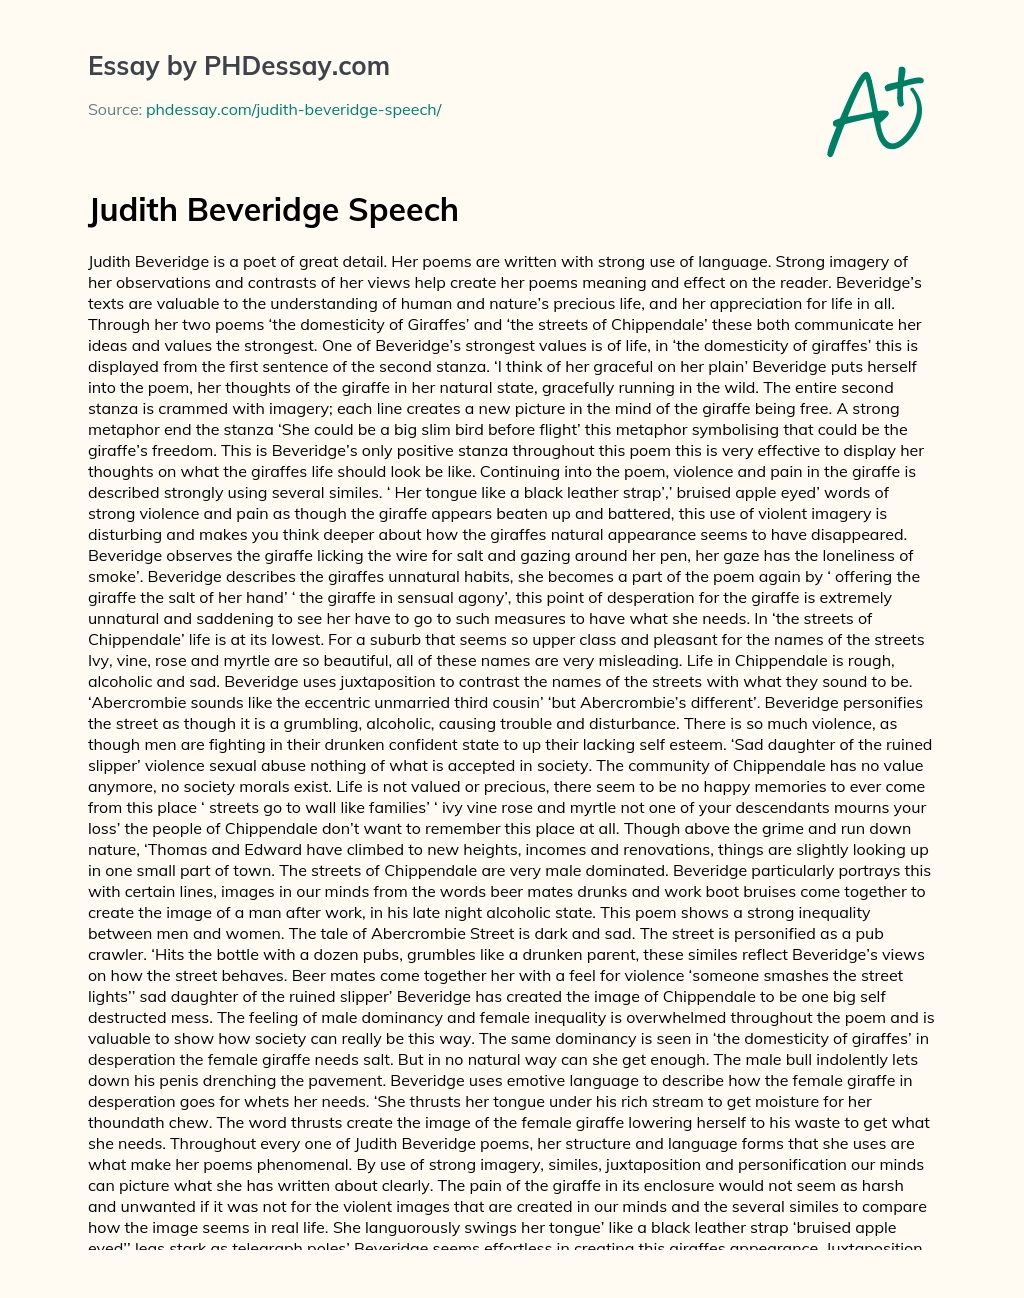 Judith Beveridge Speech essay